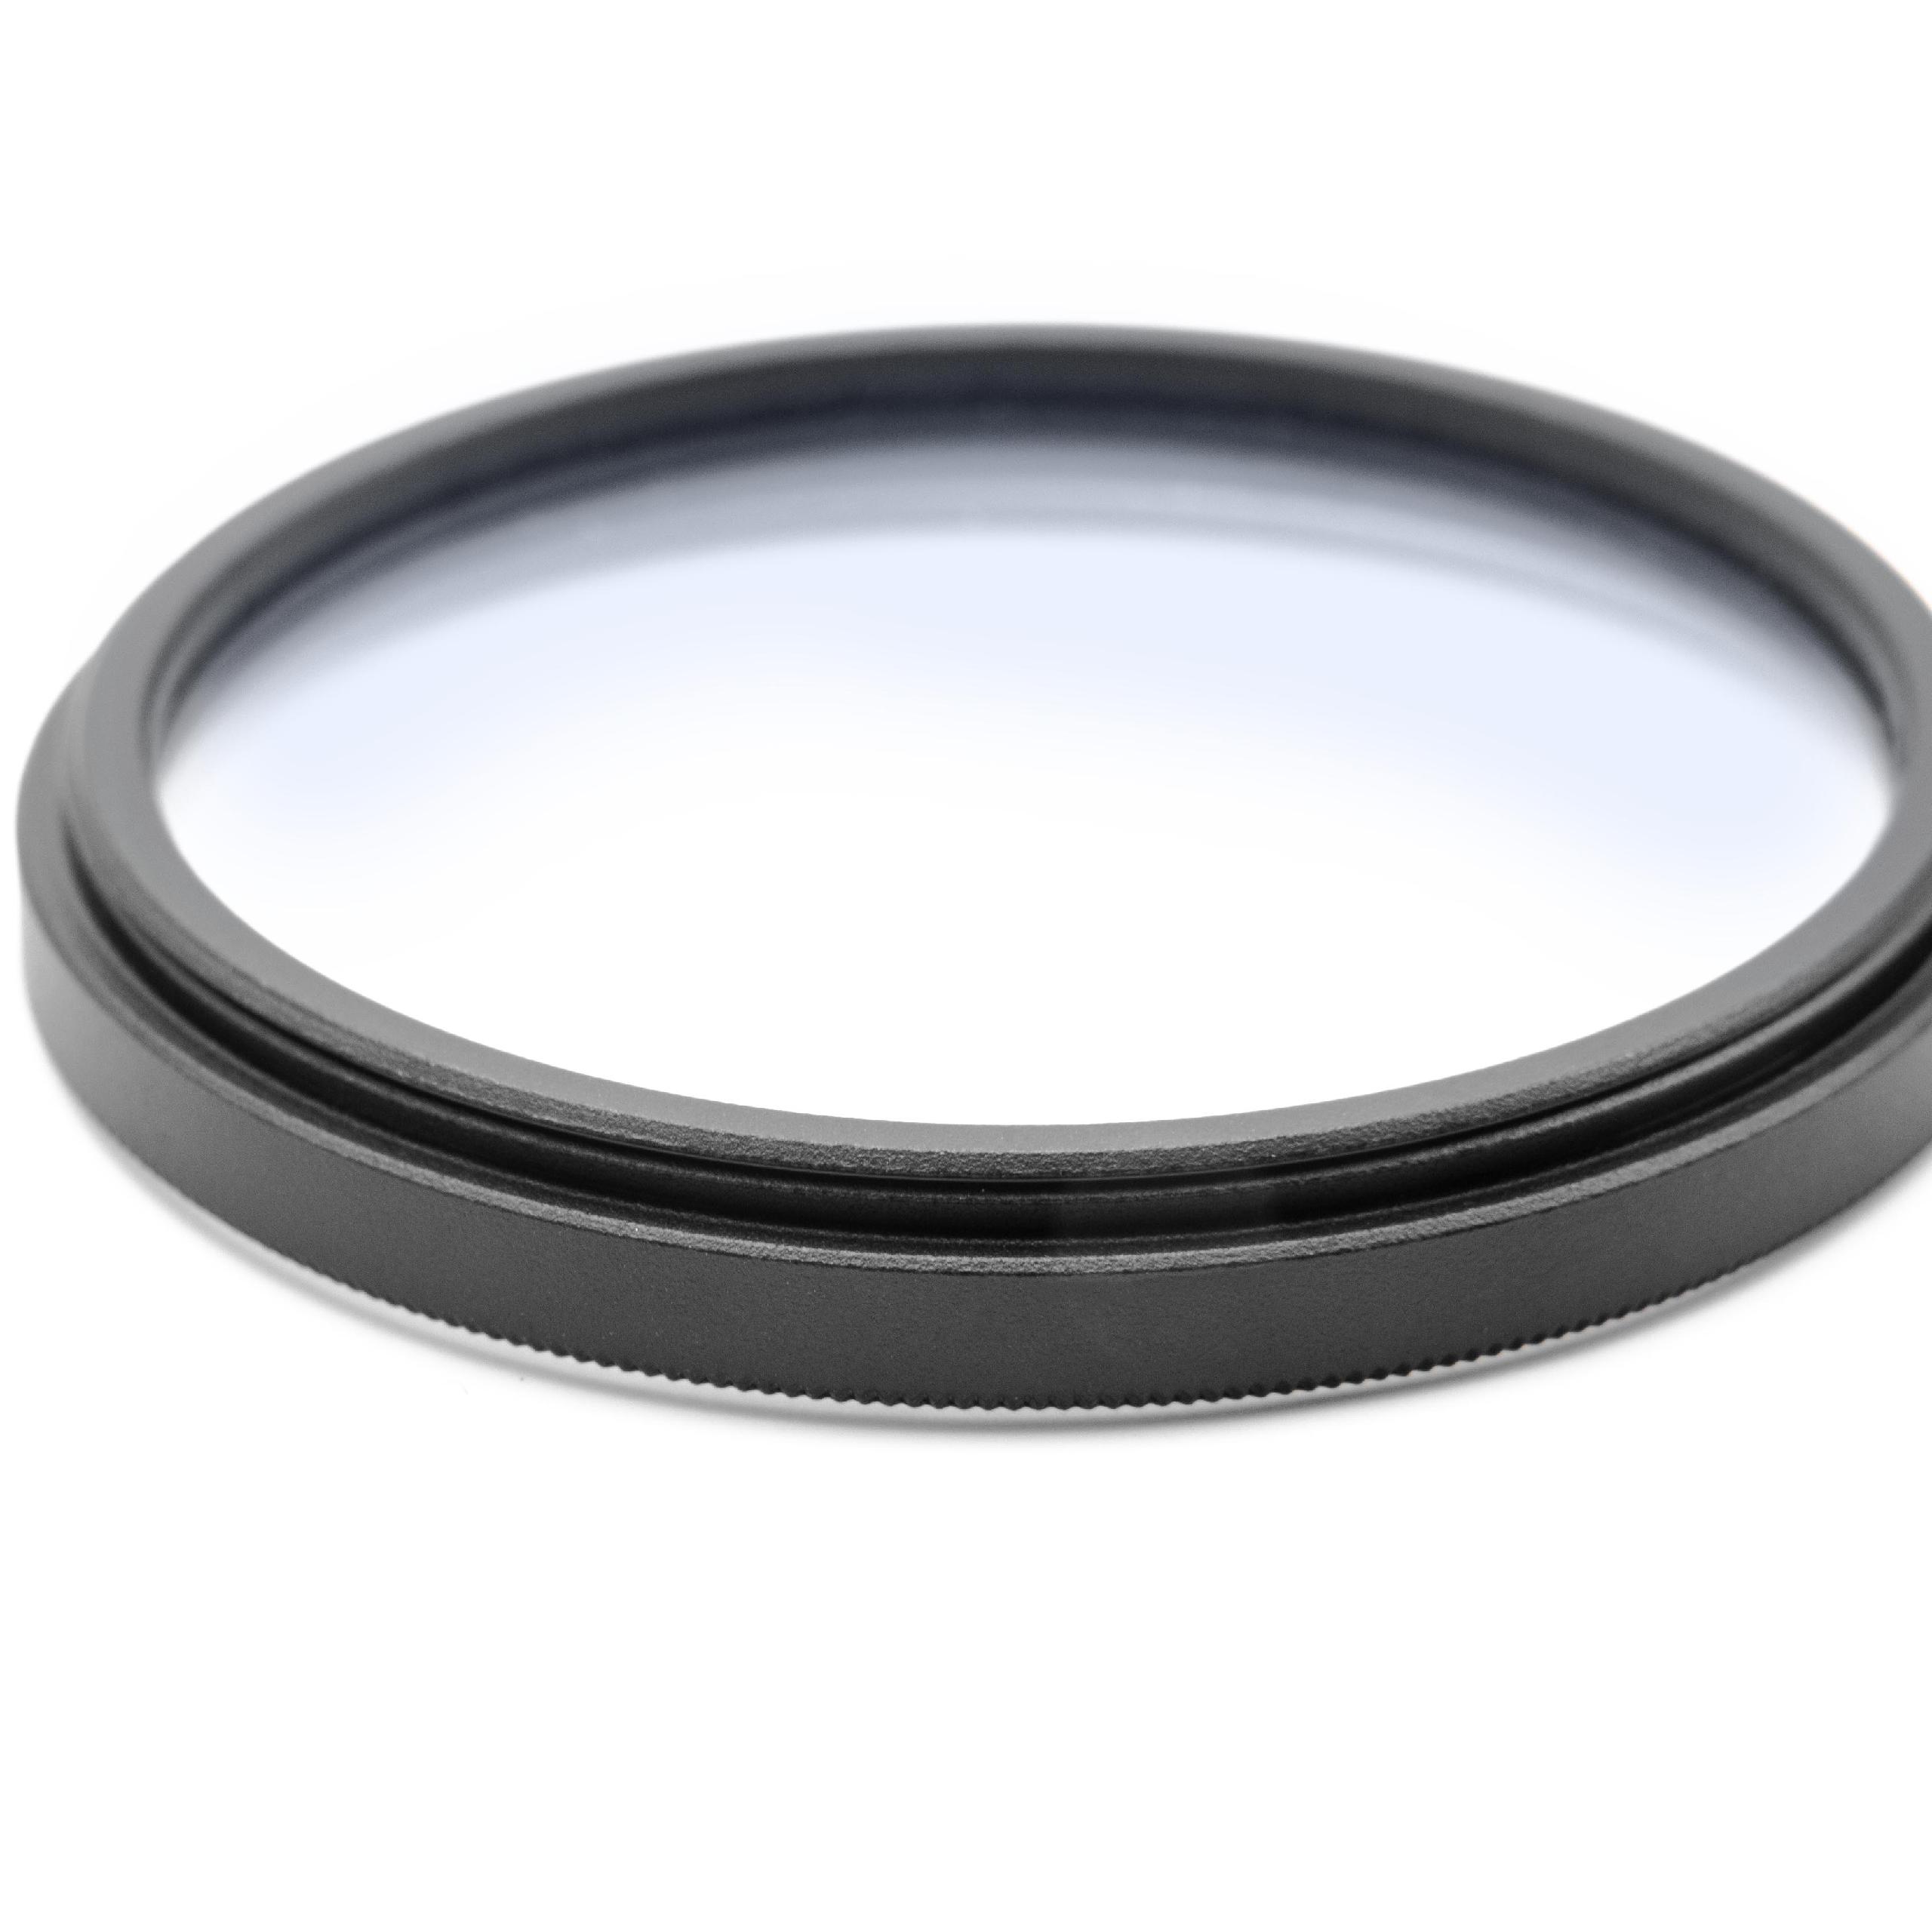 Filtro soft-focus per fotocamere e obiettivi con filettatura da 49 mm 